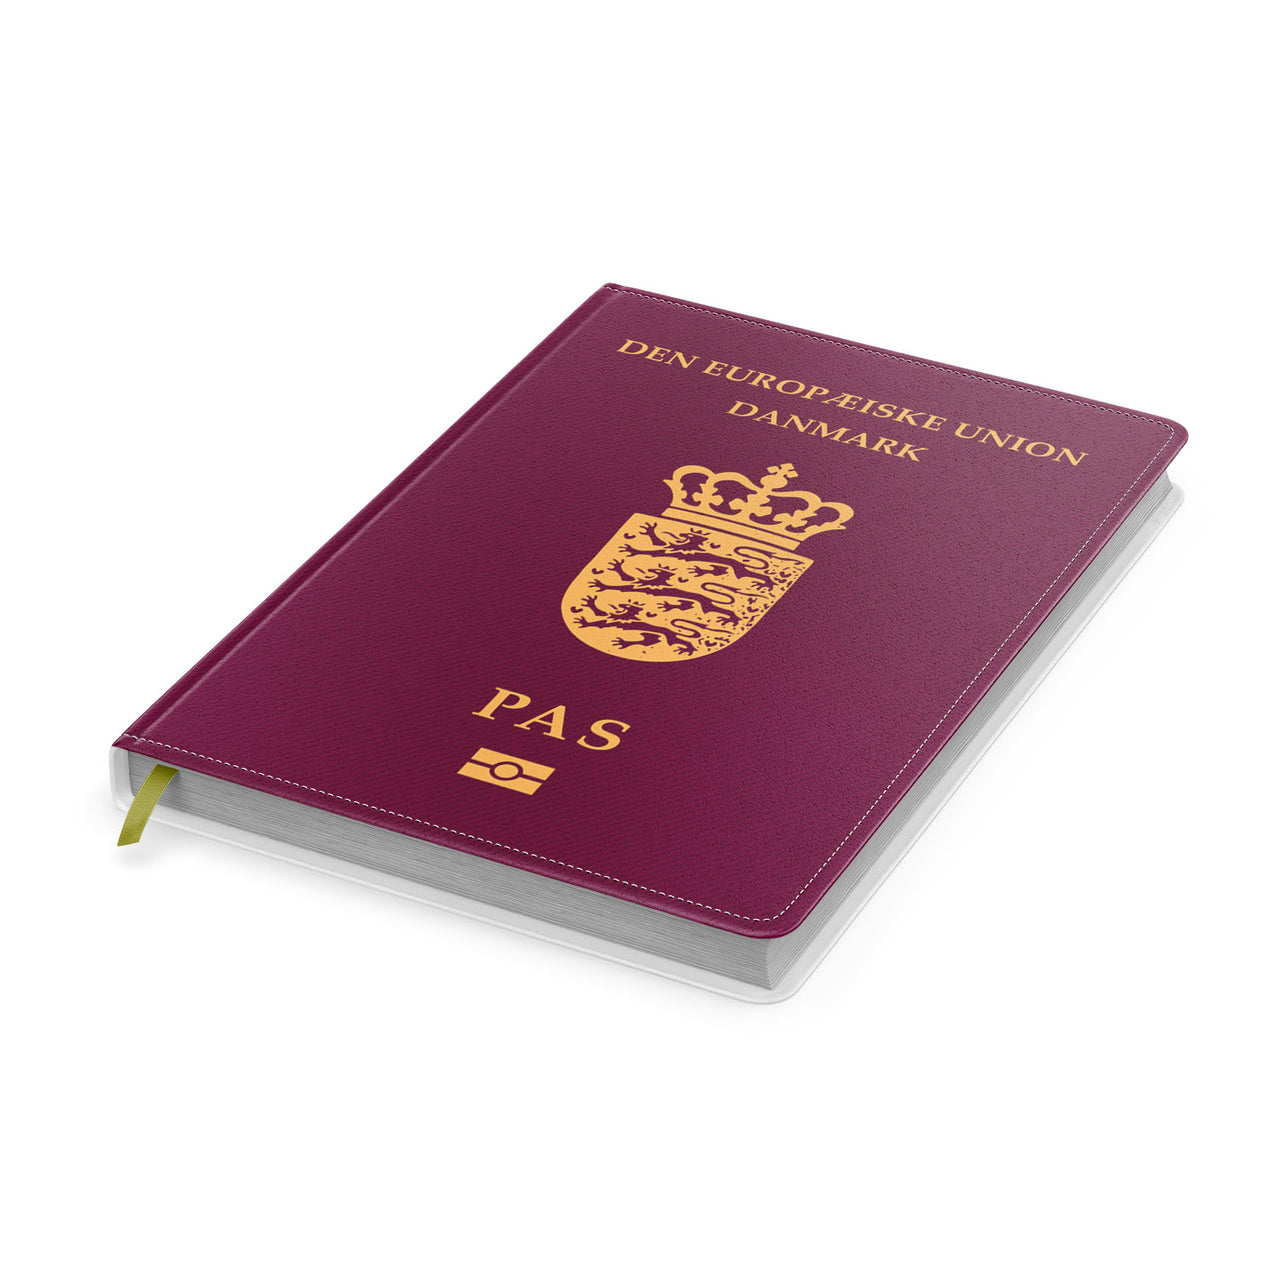 Denmark Passport Designed Notebooks